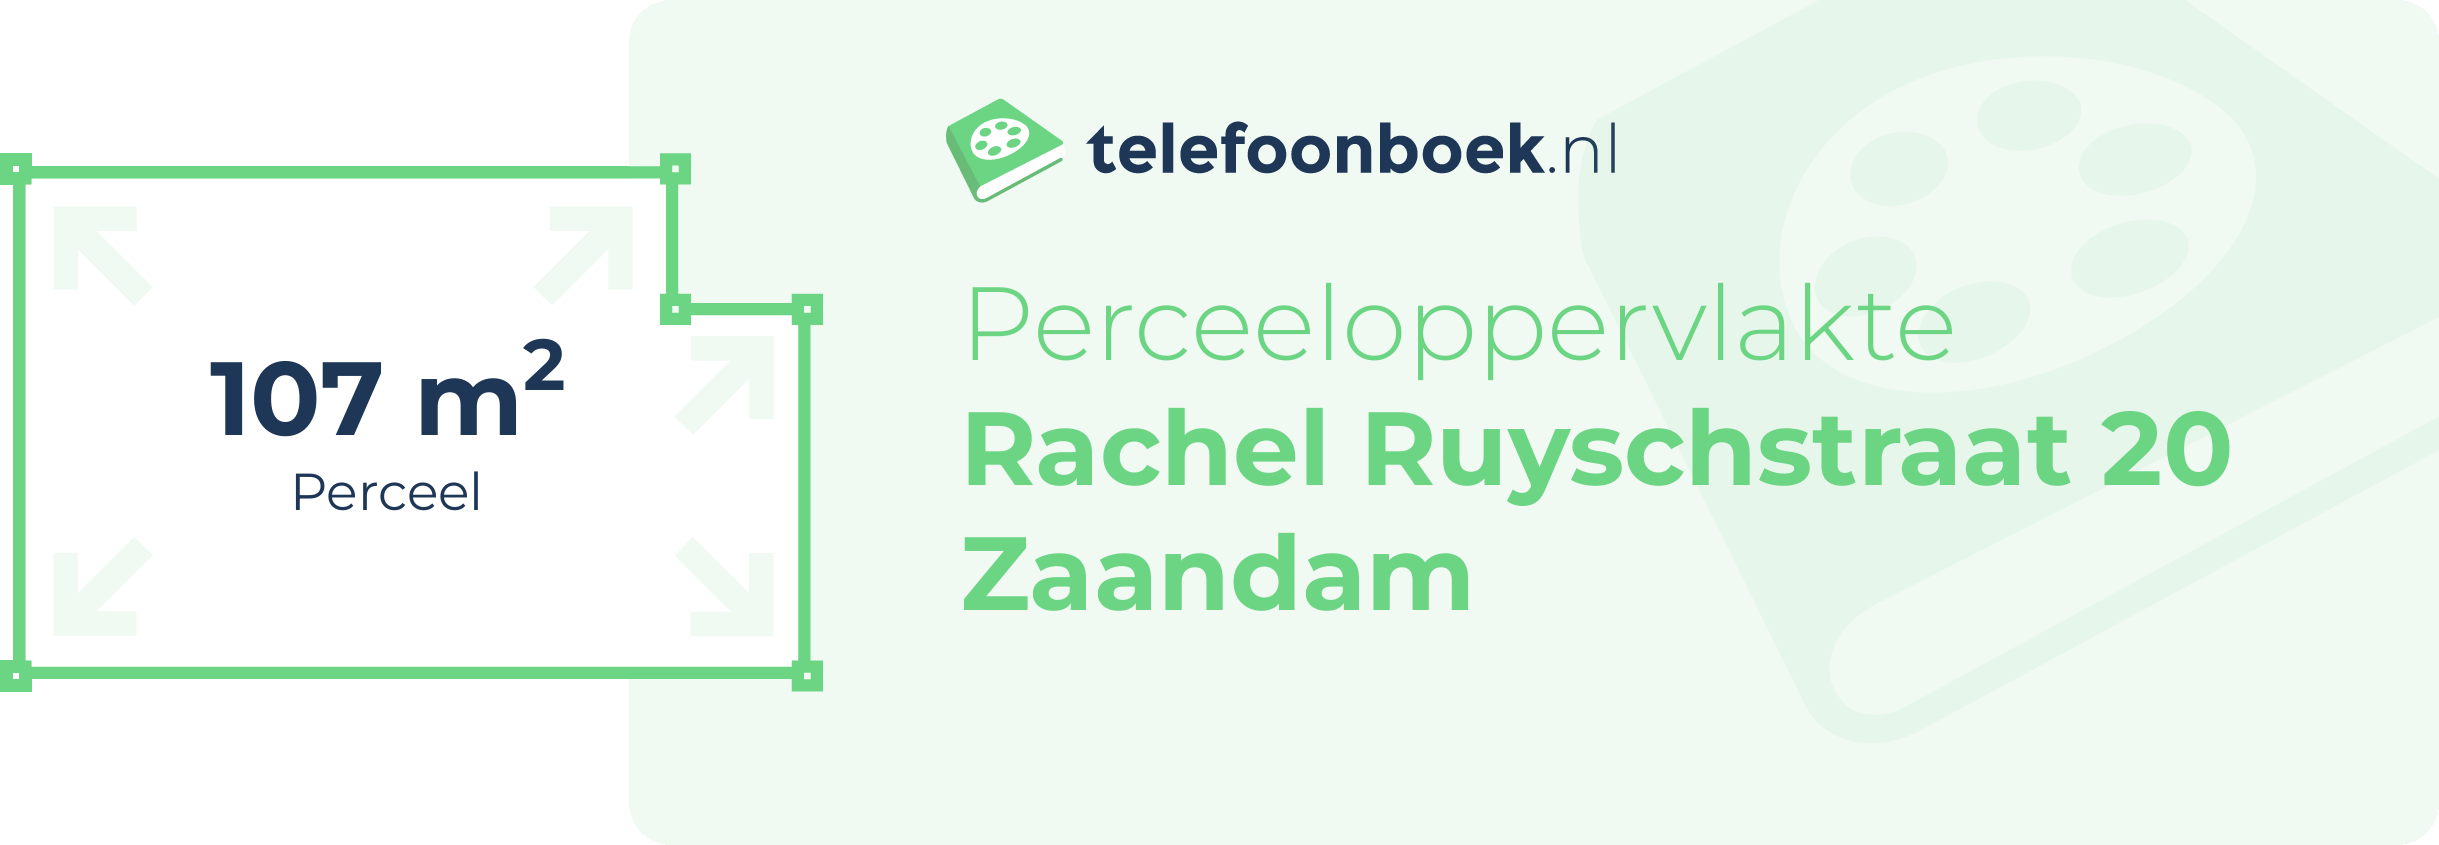 Perceeloppervlakte Rachel Ruyschstraat 20 Zaandam